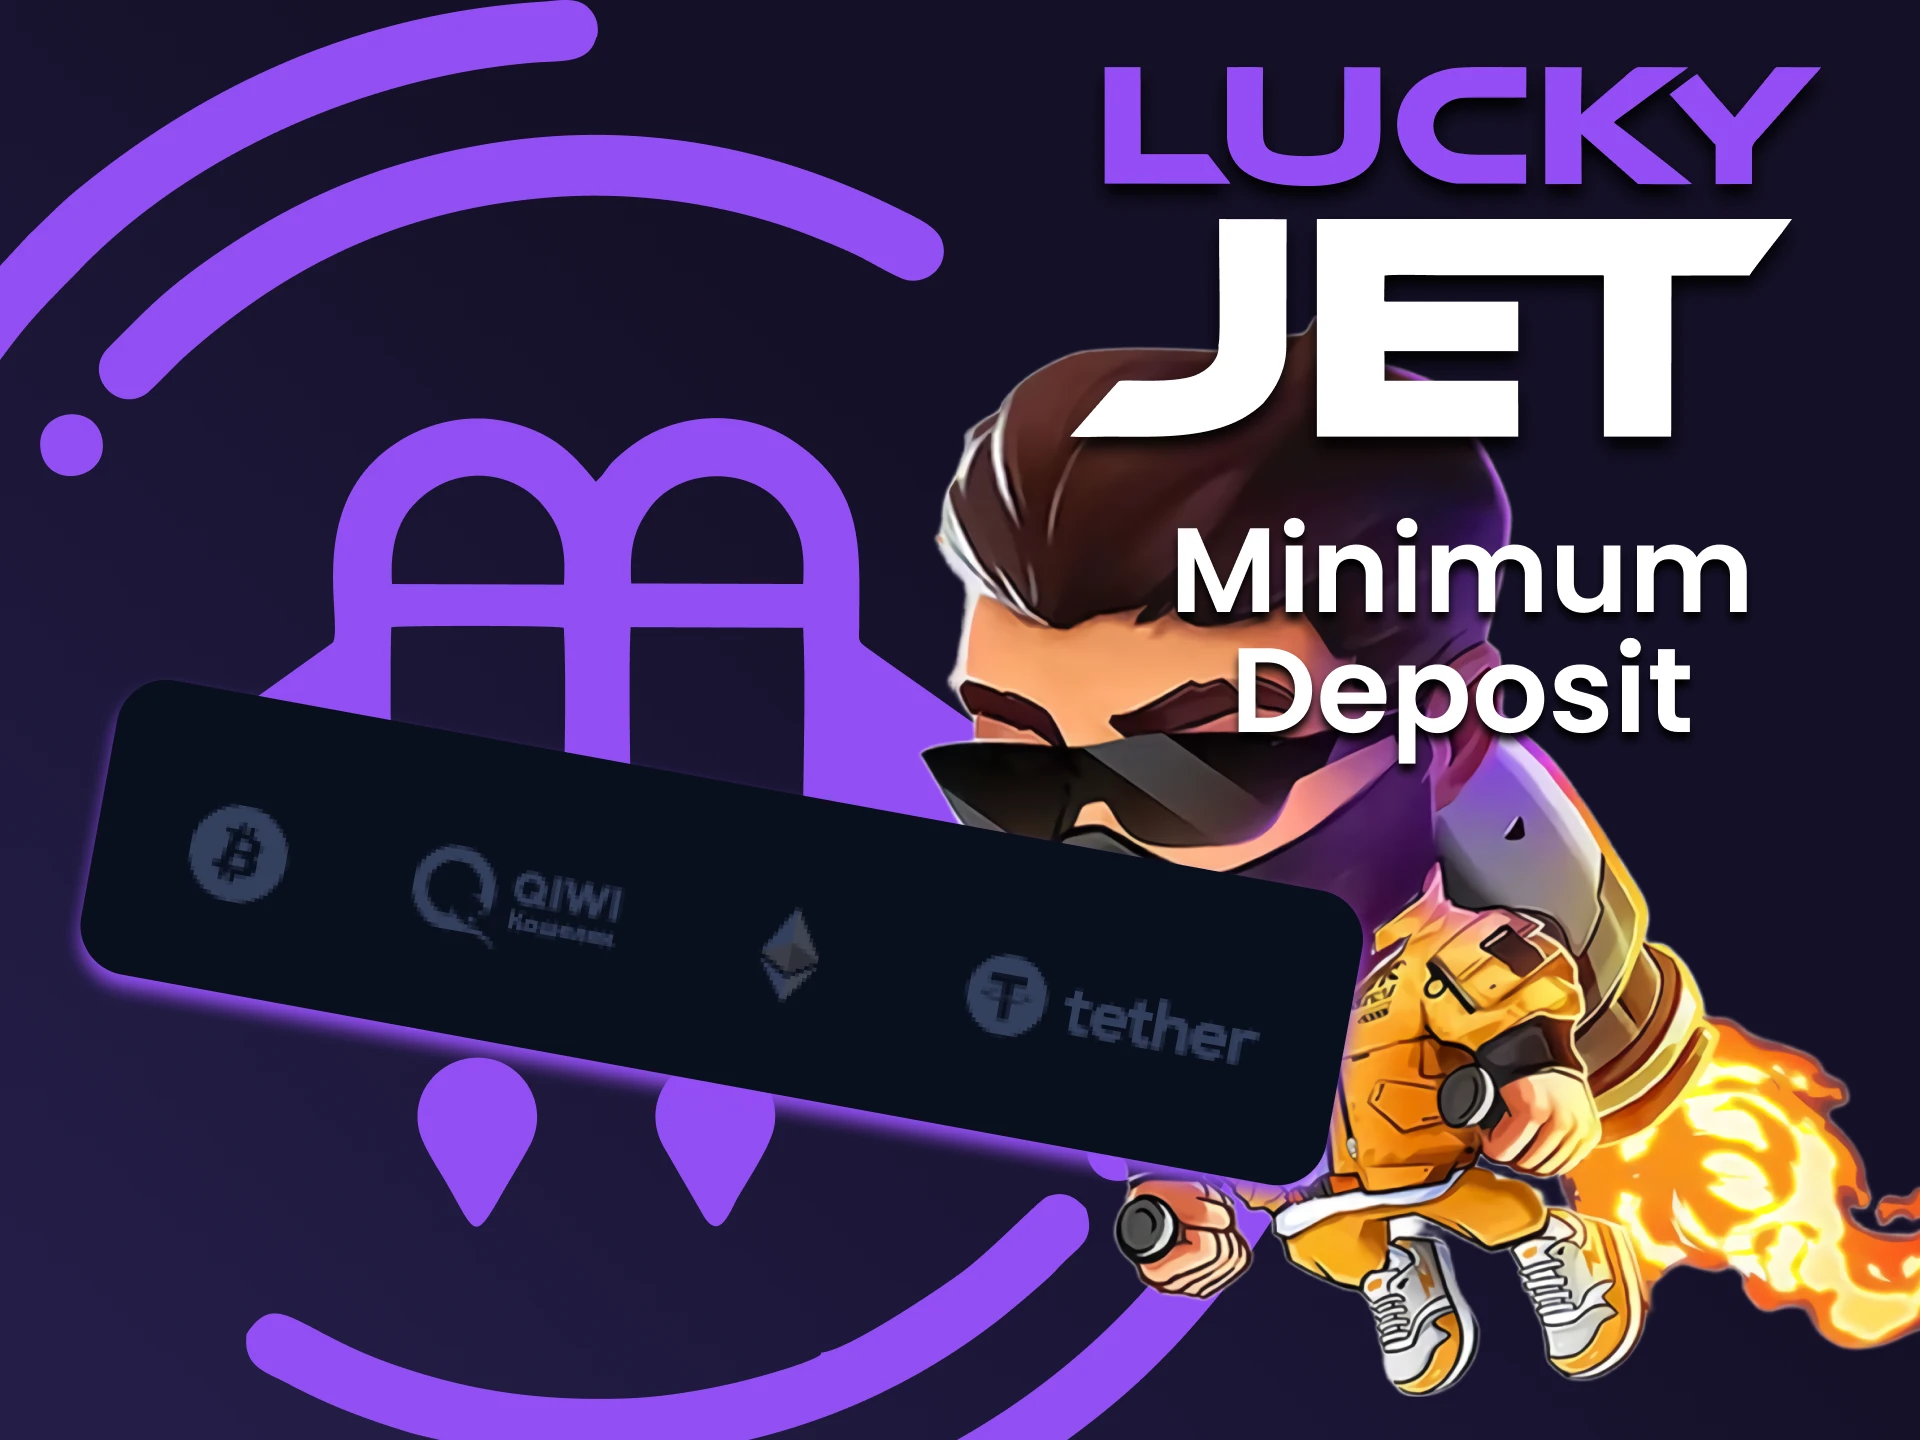 Infórmese sobre la cantidad mínima de depósito para jugar a Lucky Jet.